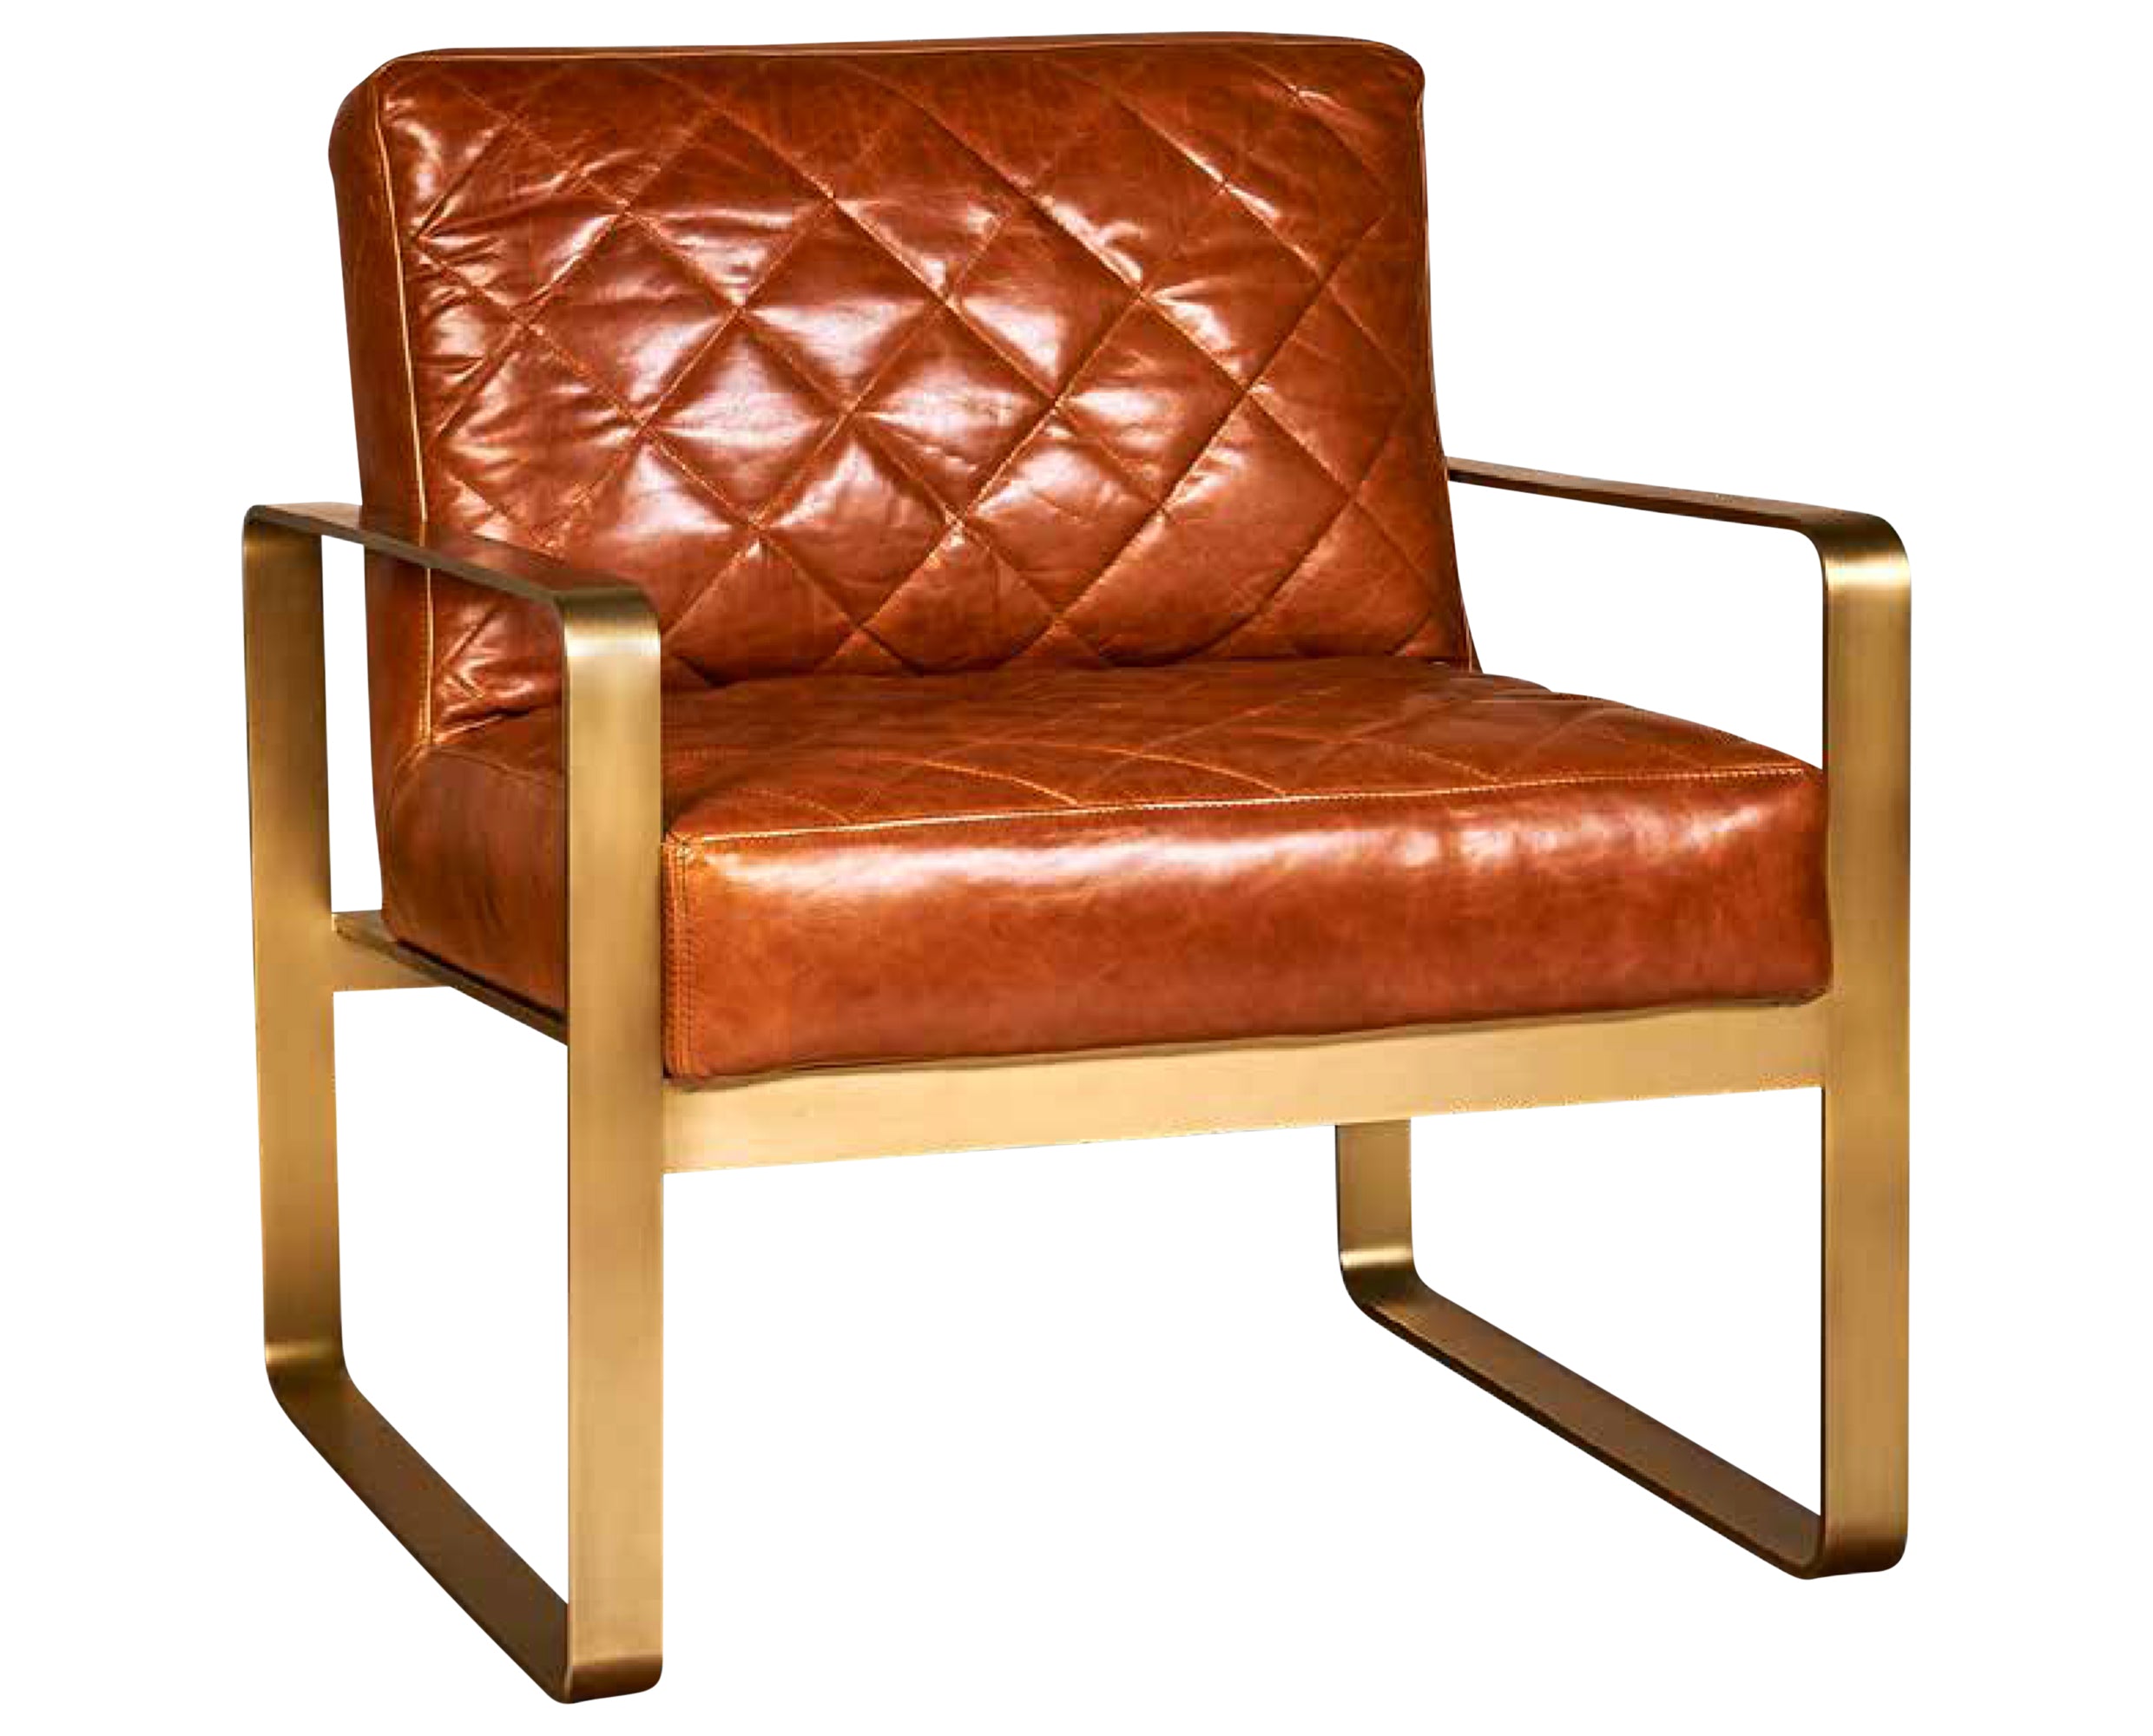 Chair as Shown | Divani Garbo Chair | Valley Ridge Furniture